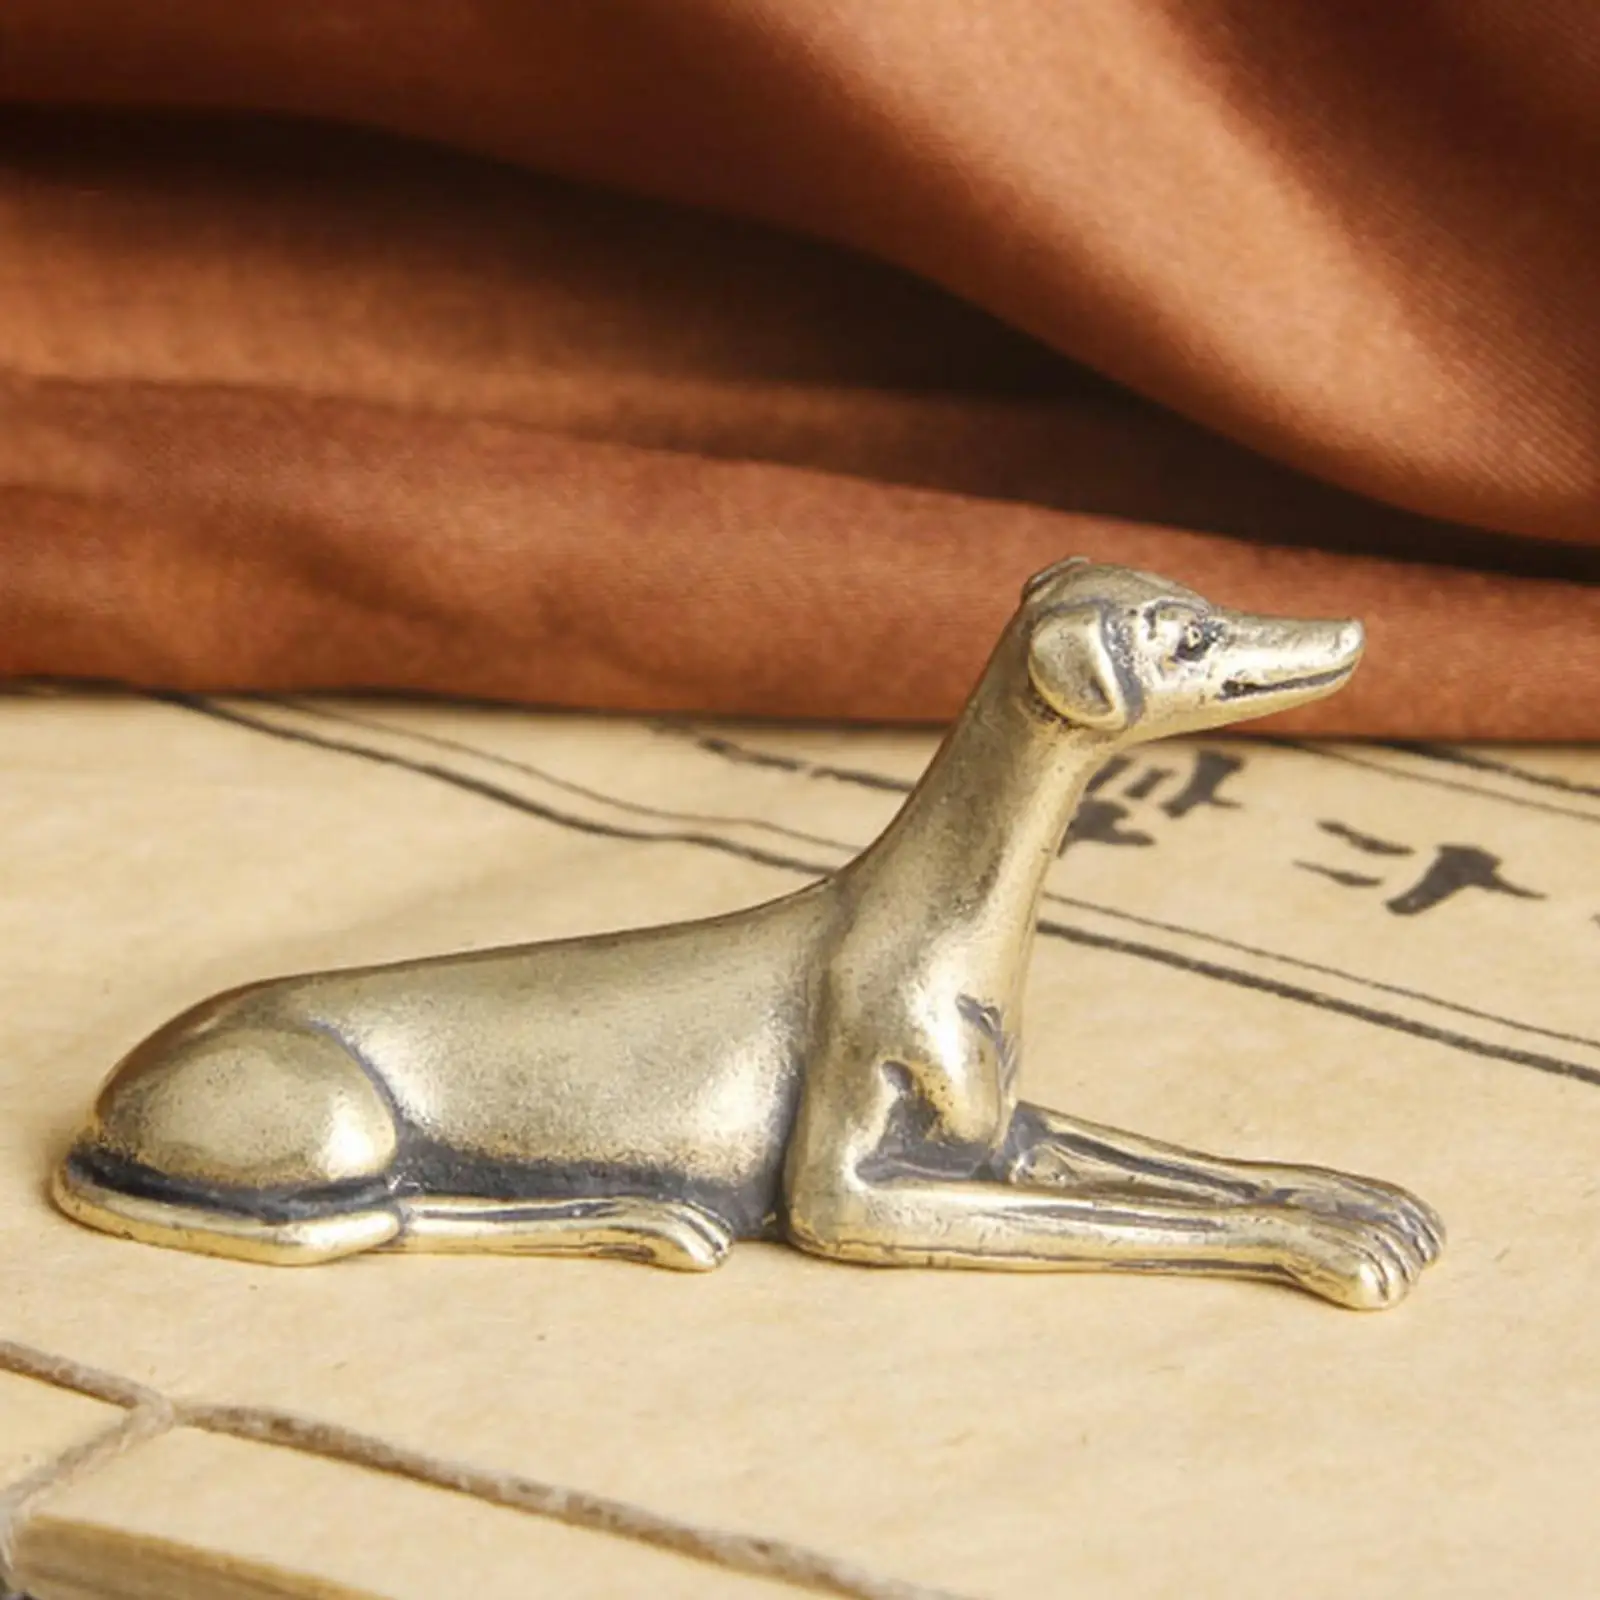 Vintage Style Dog Figurines Miniature Figurines Tea Pet Decorative Dog Ornament for Desktop Hotel Shelf Dog Sculpture Decor